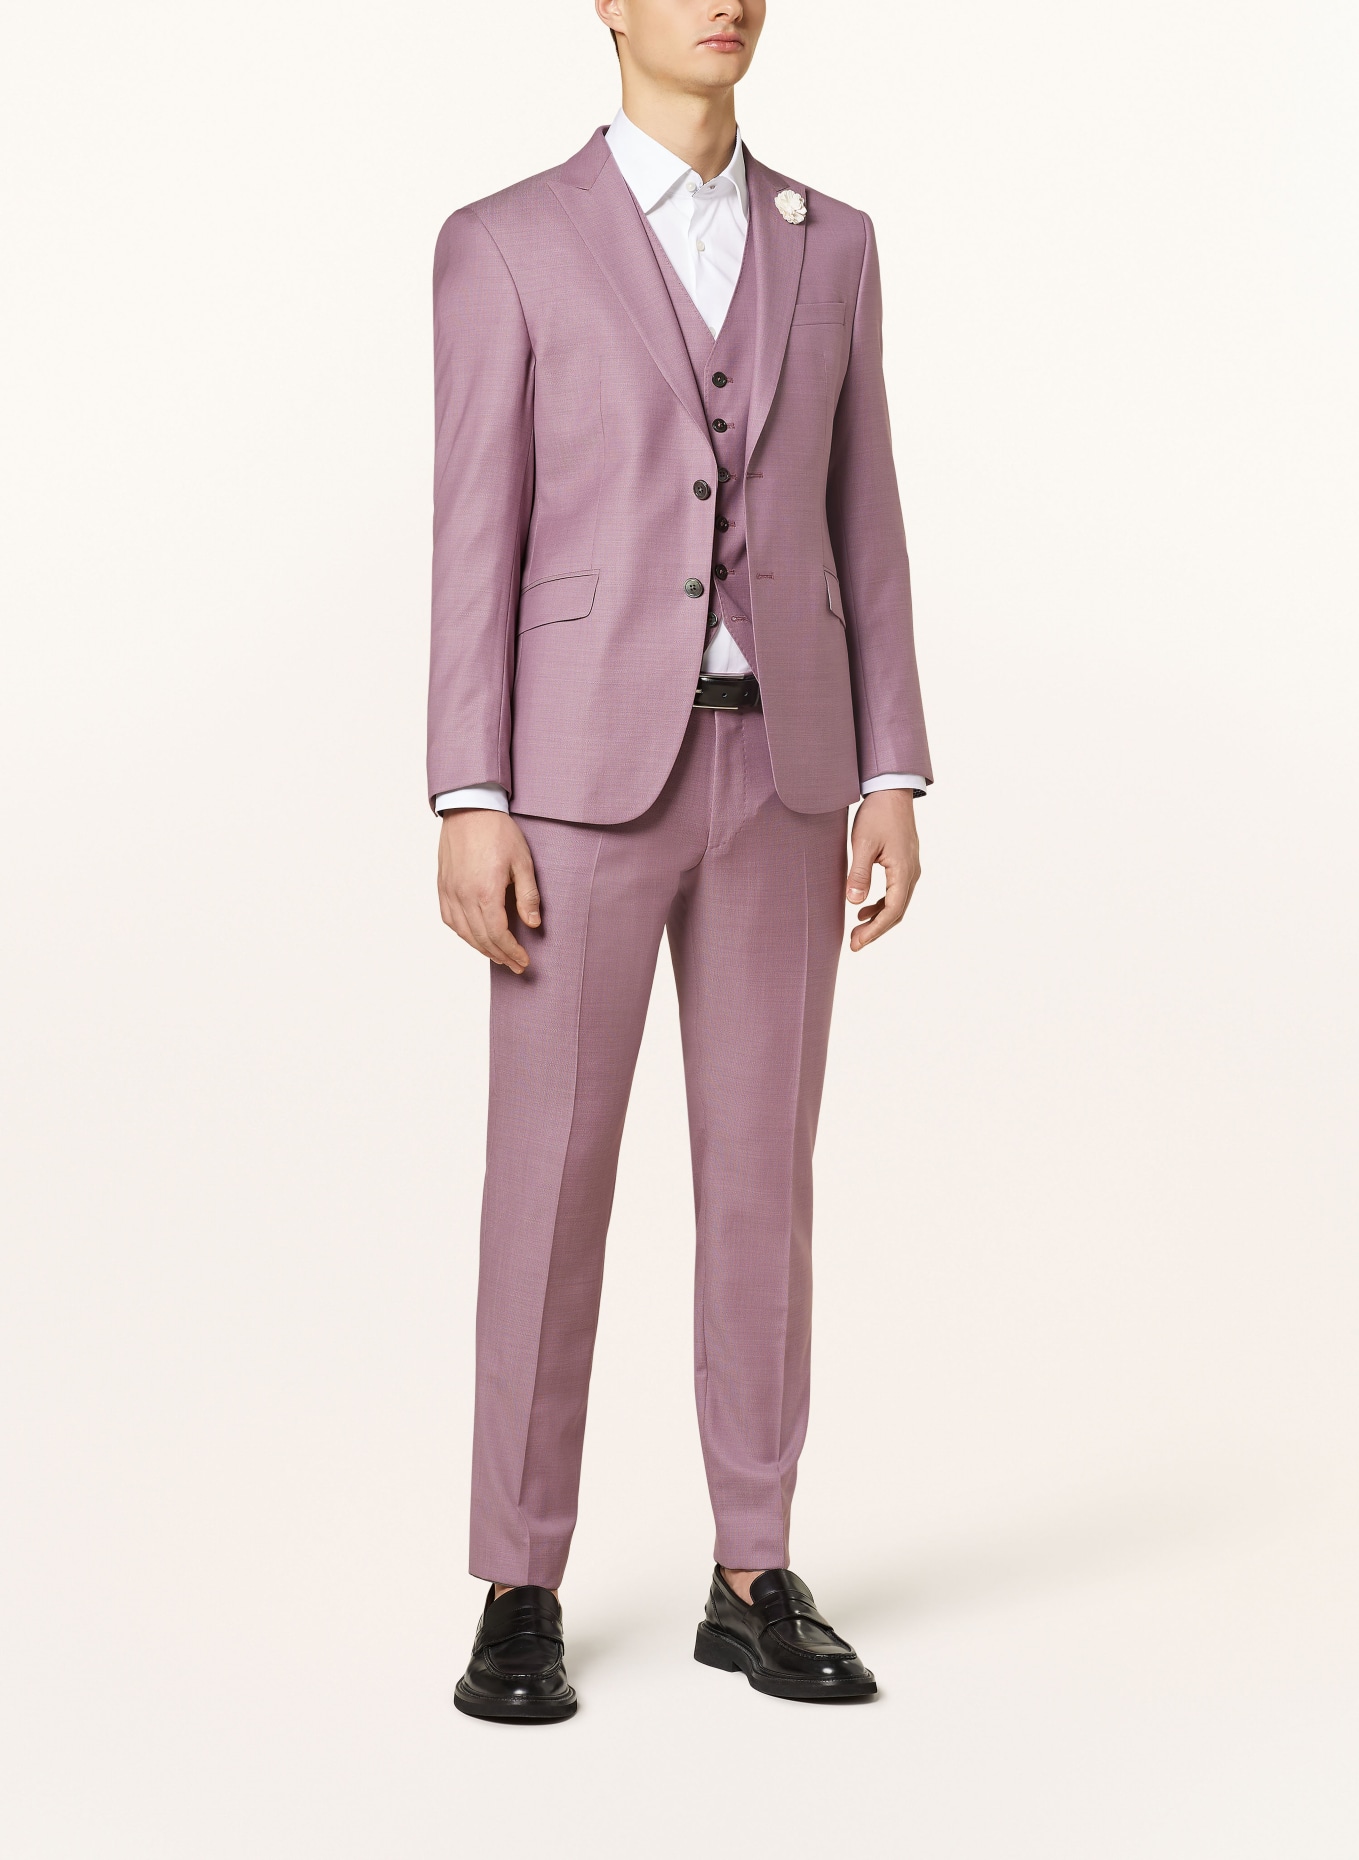 JOOP! Suit vest WEAZER slim fit, Color: 650 Dark Pink                  650 (Image 2)